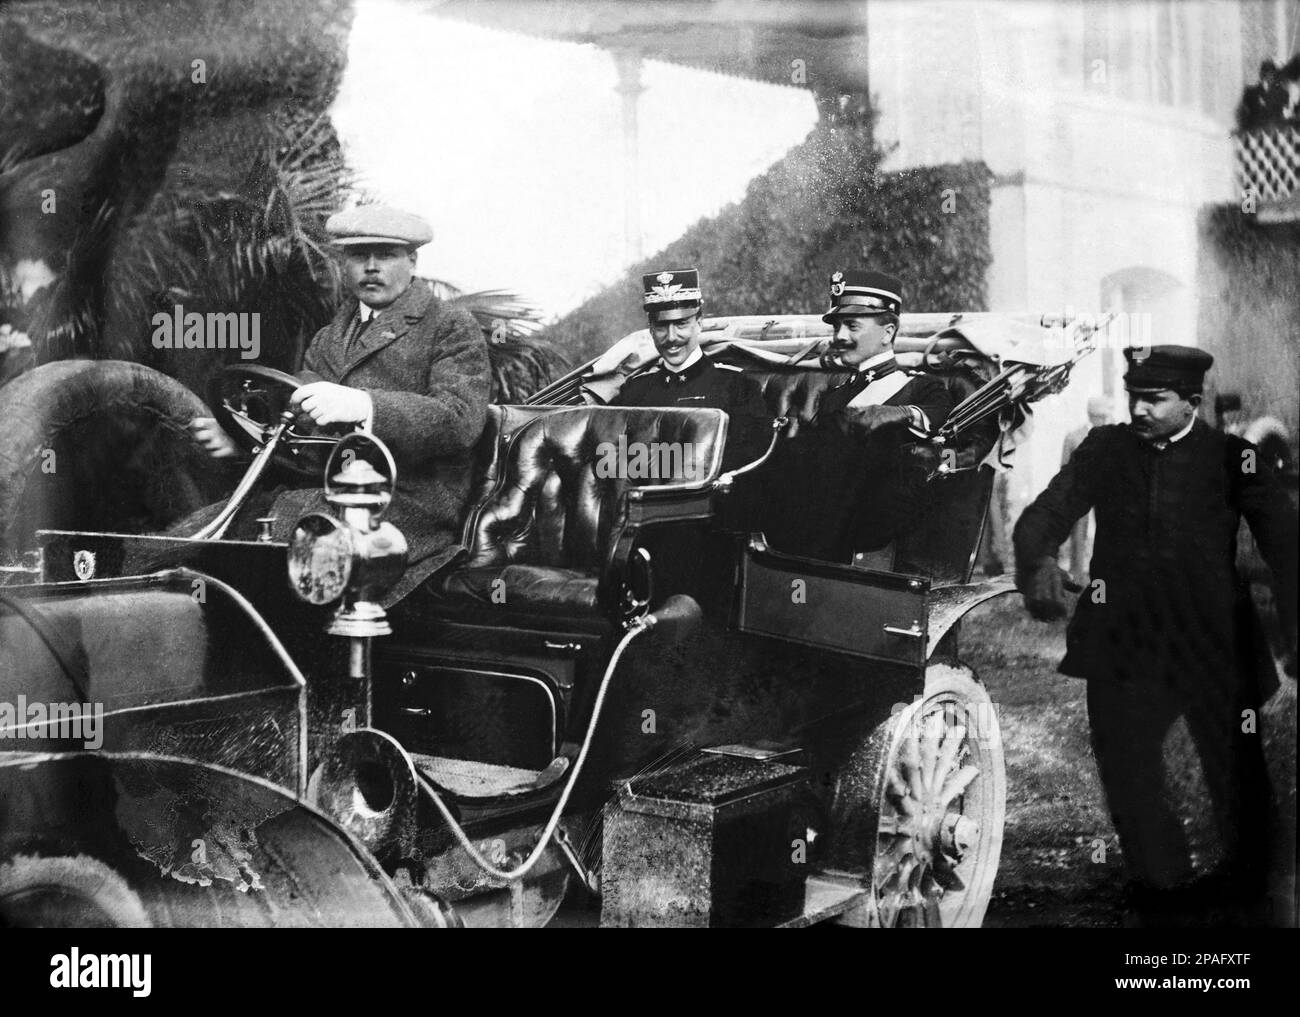 1900 ca: Il principe italiano VITTORIO EMANUELE SAVOIA - AOSTA Conte di TORINO ( 1870 - 1946 ) tenente di Cavalleria Nizza Cavalleria durante la prima guerra mondiale ( a sinistra in questa foto ) - Royalty - nobili italiani - Nobiltà - principe reale - ITALIA - colletto - colletto - uniforme militare - uniforme divisa militare - baffi - baffi - Savoia-Aosta - sorriso - sorriso - automobile - automobile - auto - auto ---- ARCHIVIO GBB Foto Stock